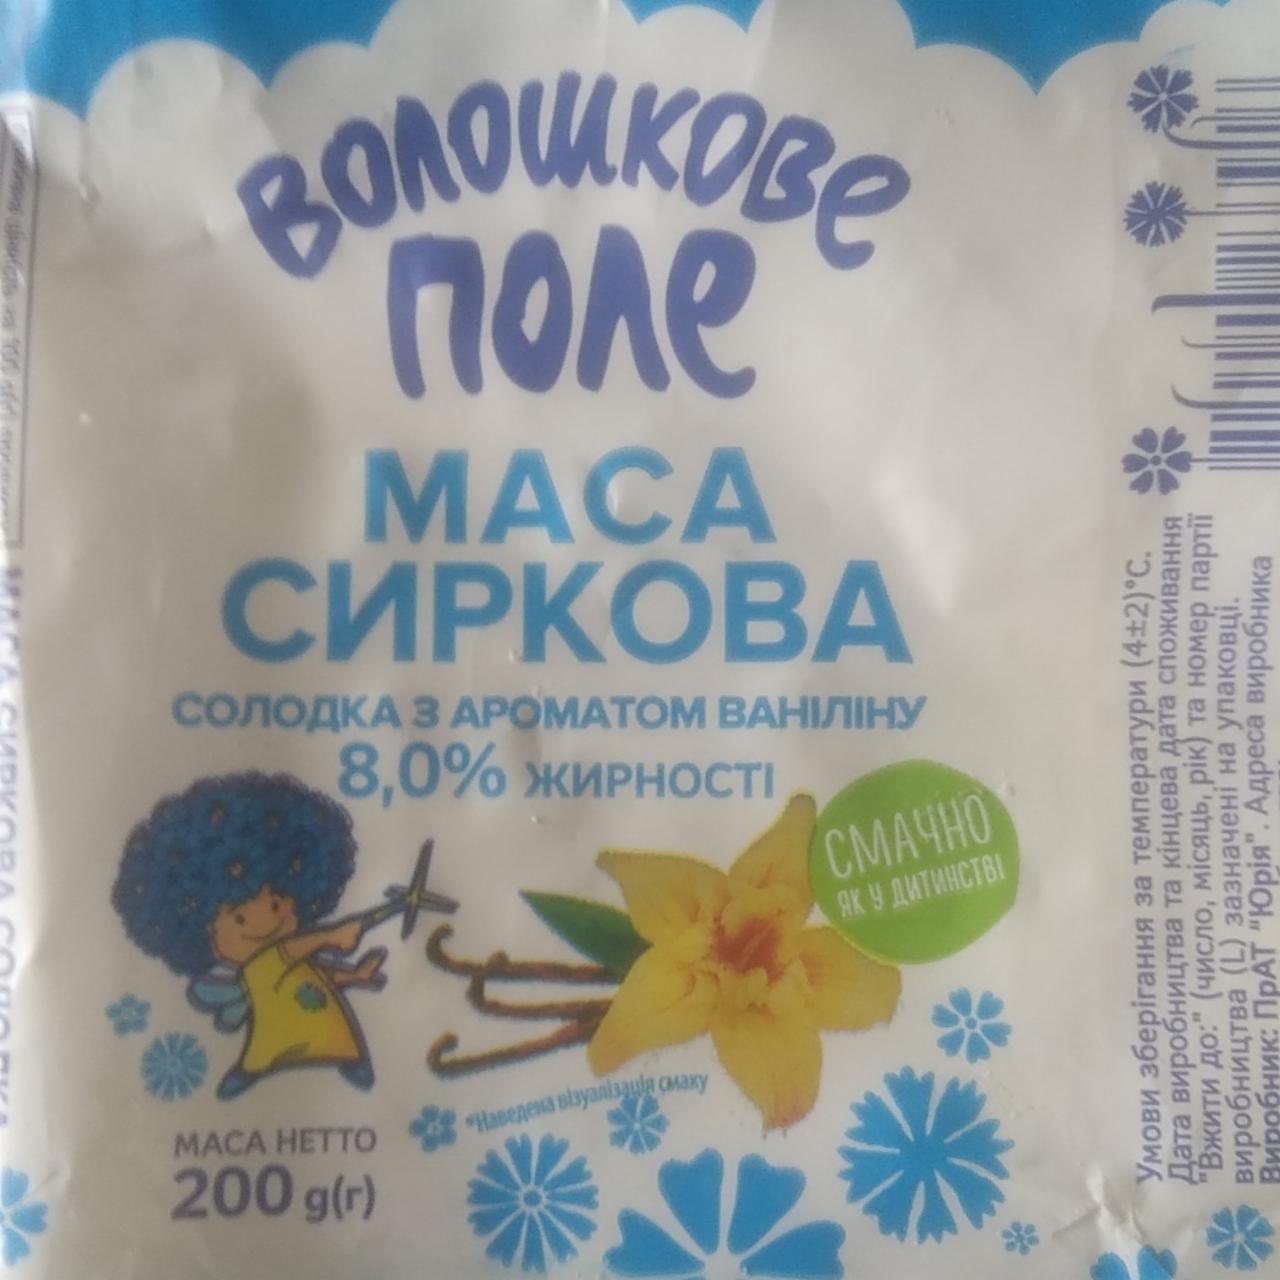 Фото - Маса сиркова солодка з ароматом ваніліну Волошкове поле